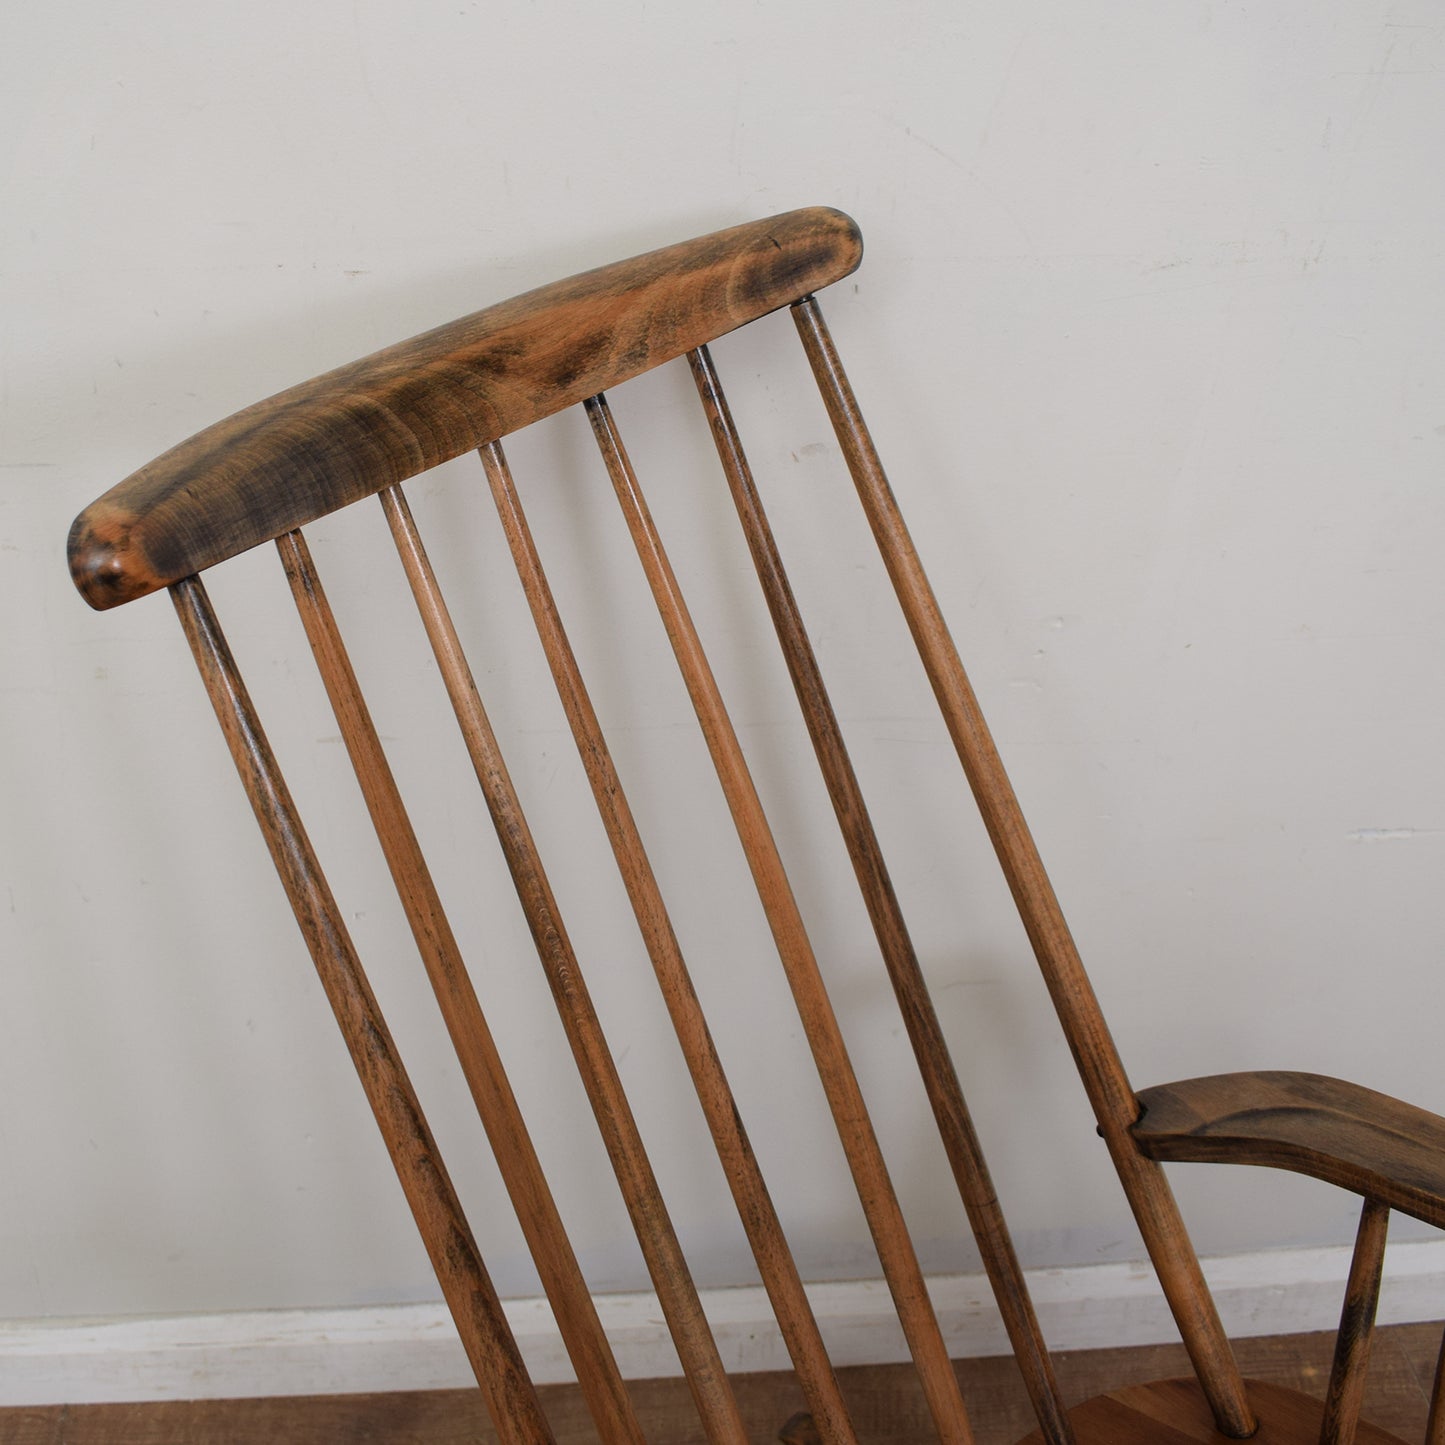 Restored Rocking Chair